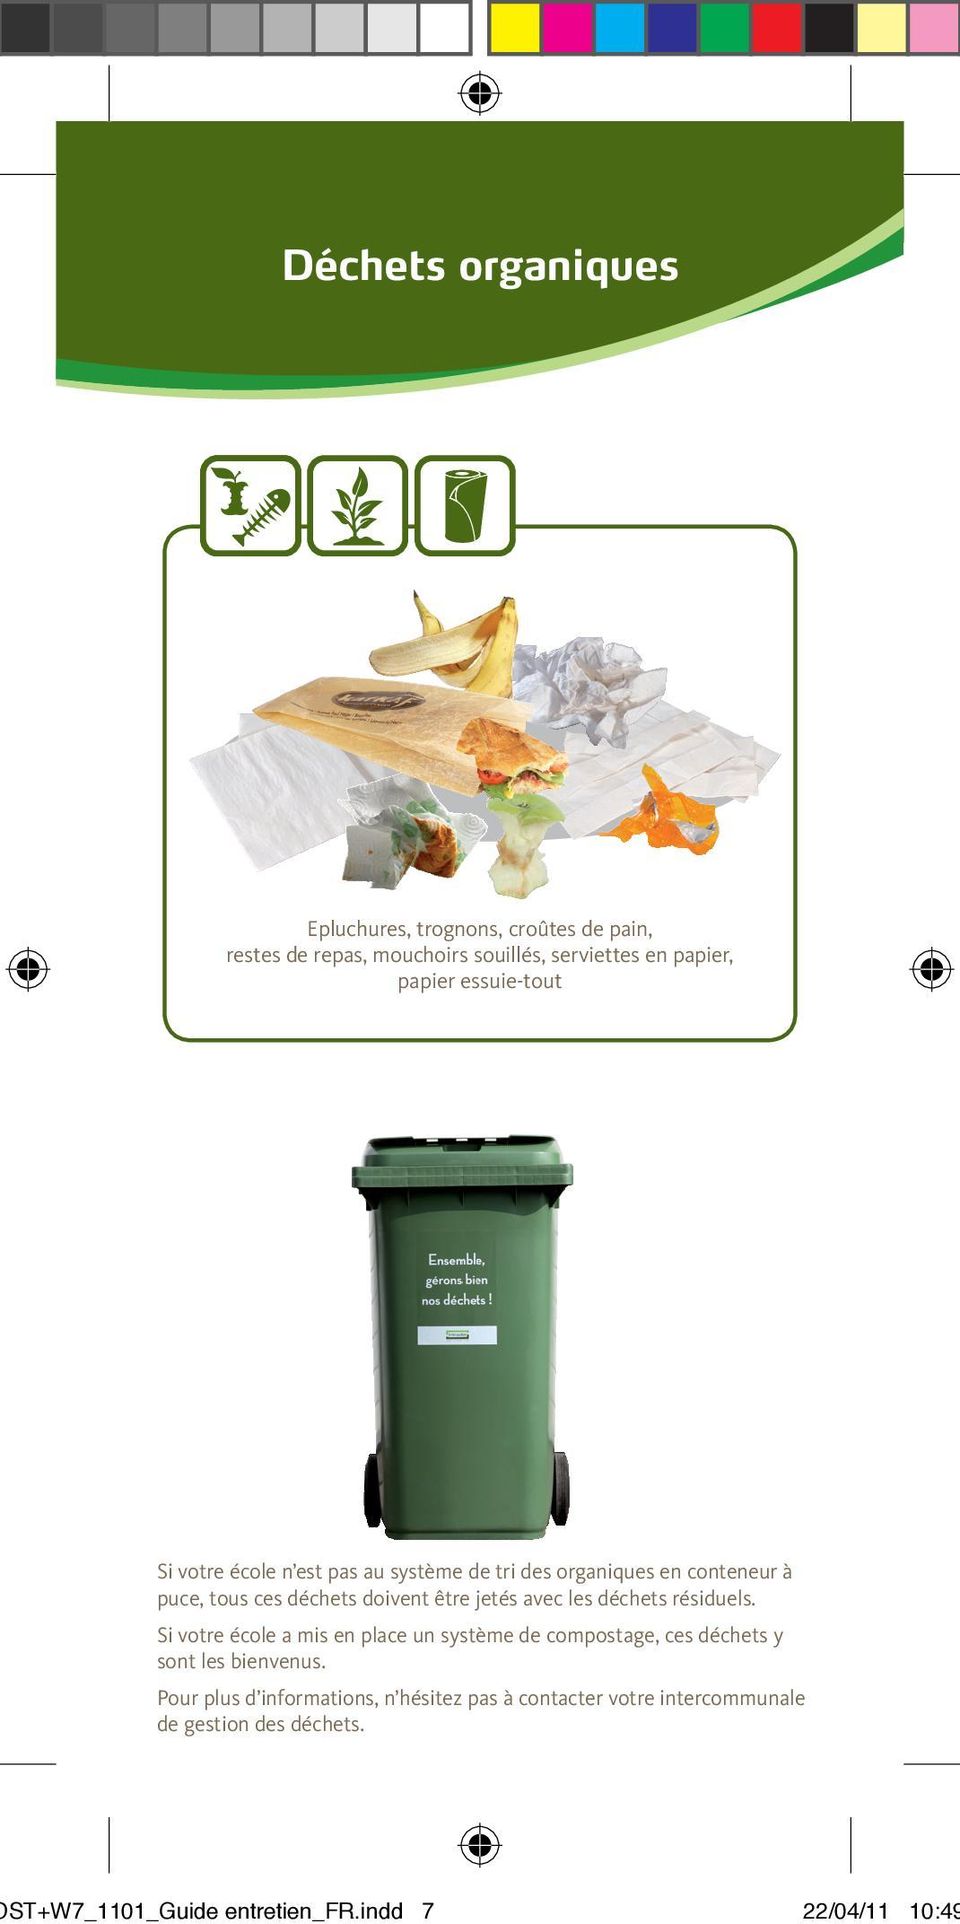 avec les déchets résiduels. Si votre école a mis en place un système de compostage, ces déchets y sont les bienvenus.